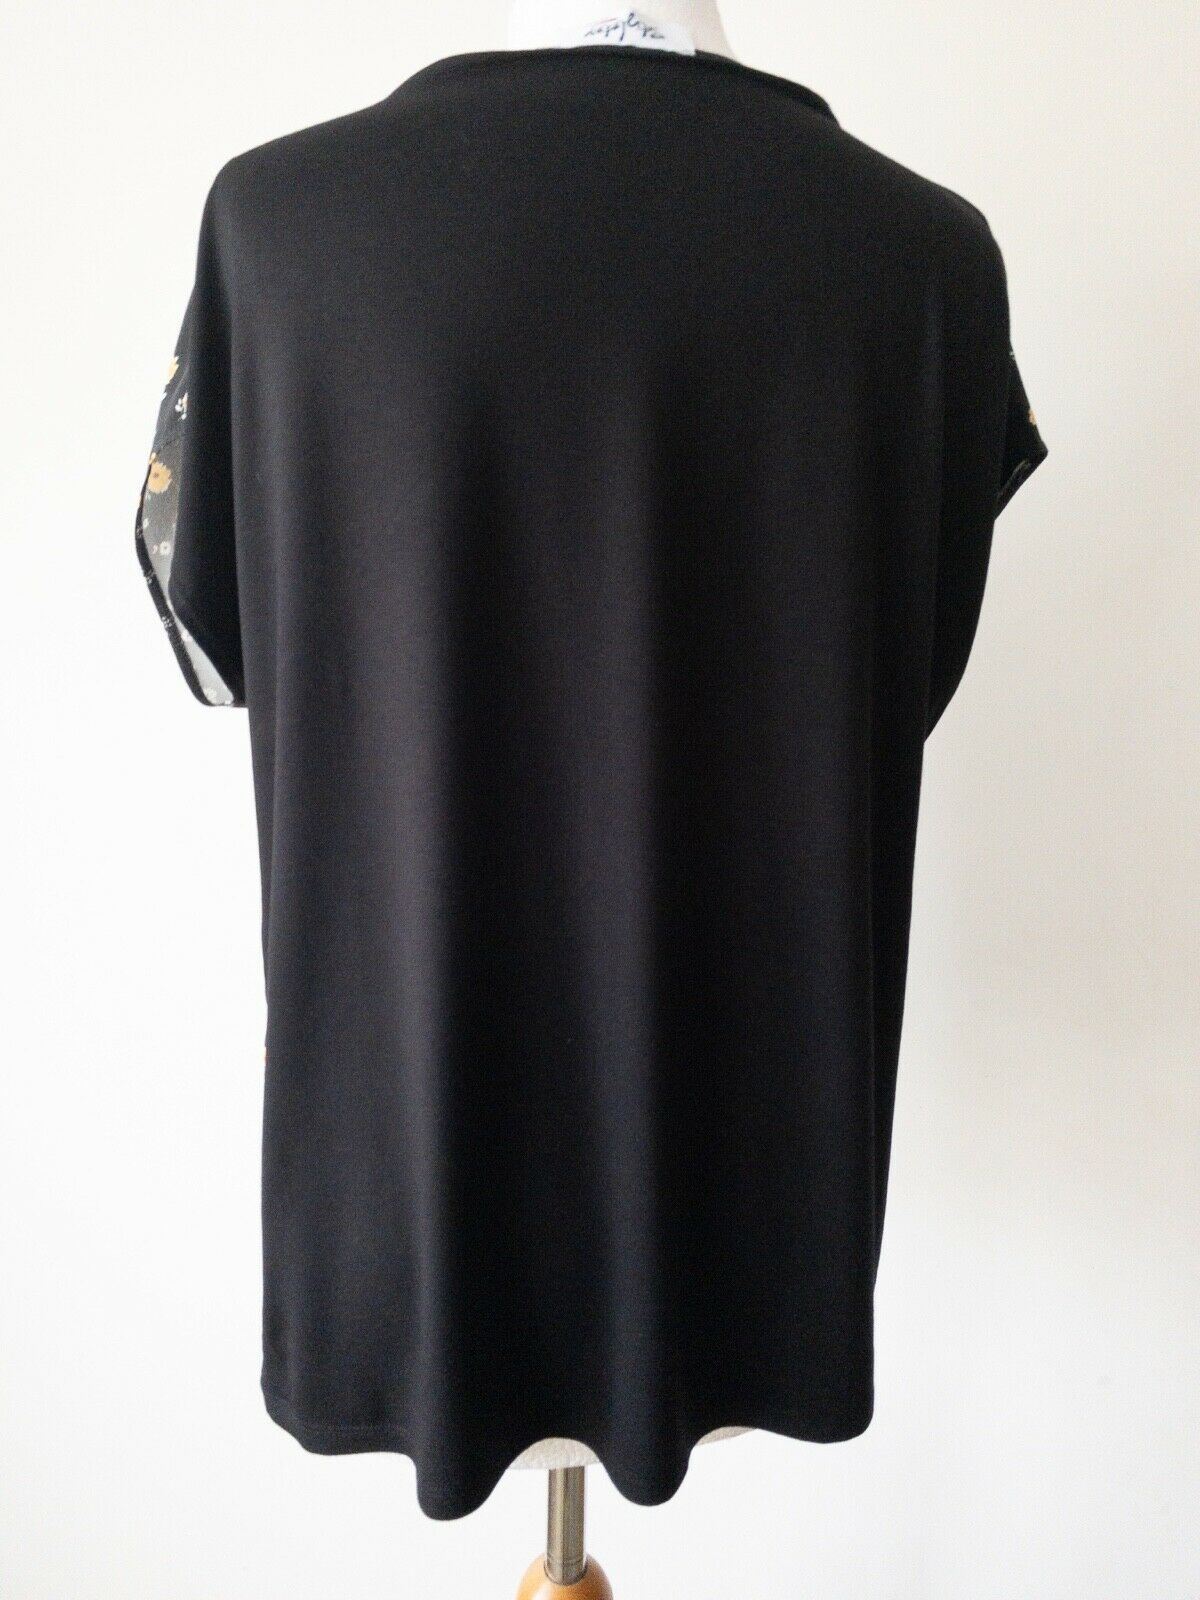 Black Floral Contrast T-Shirt Size 10